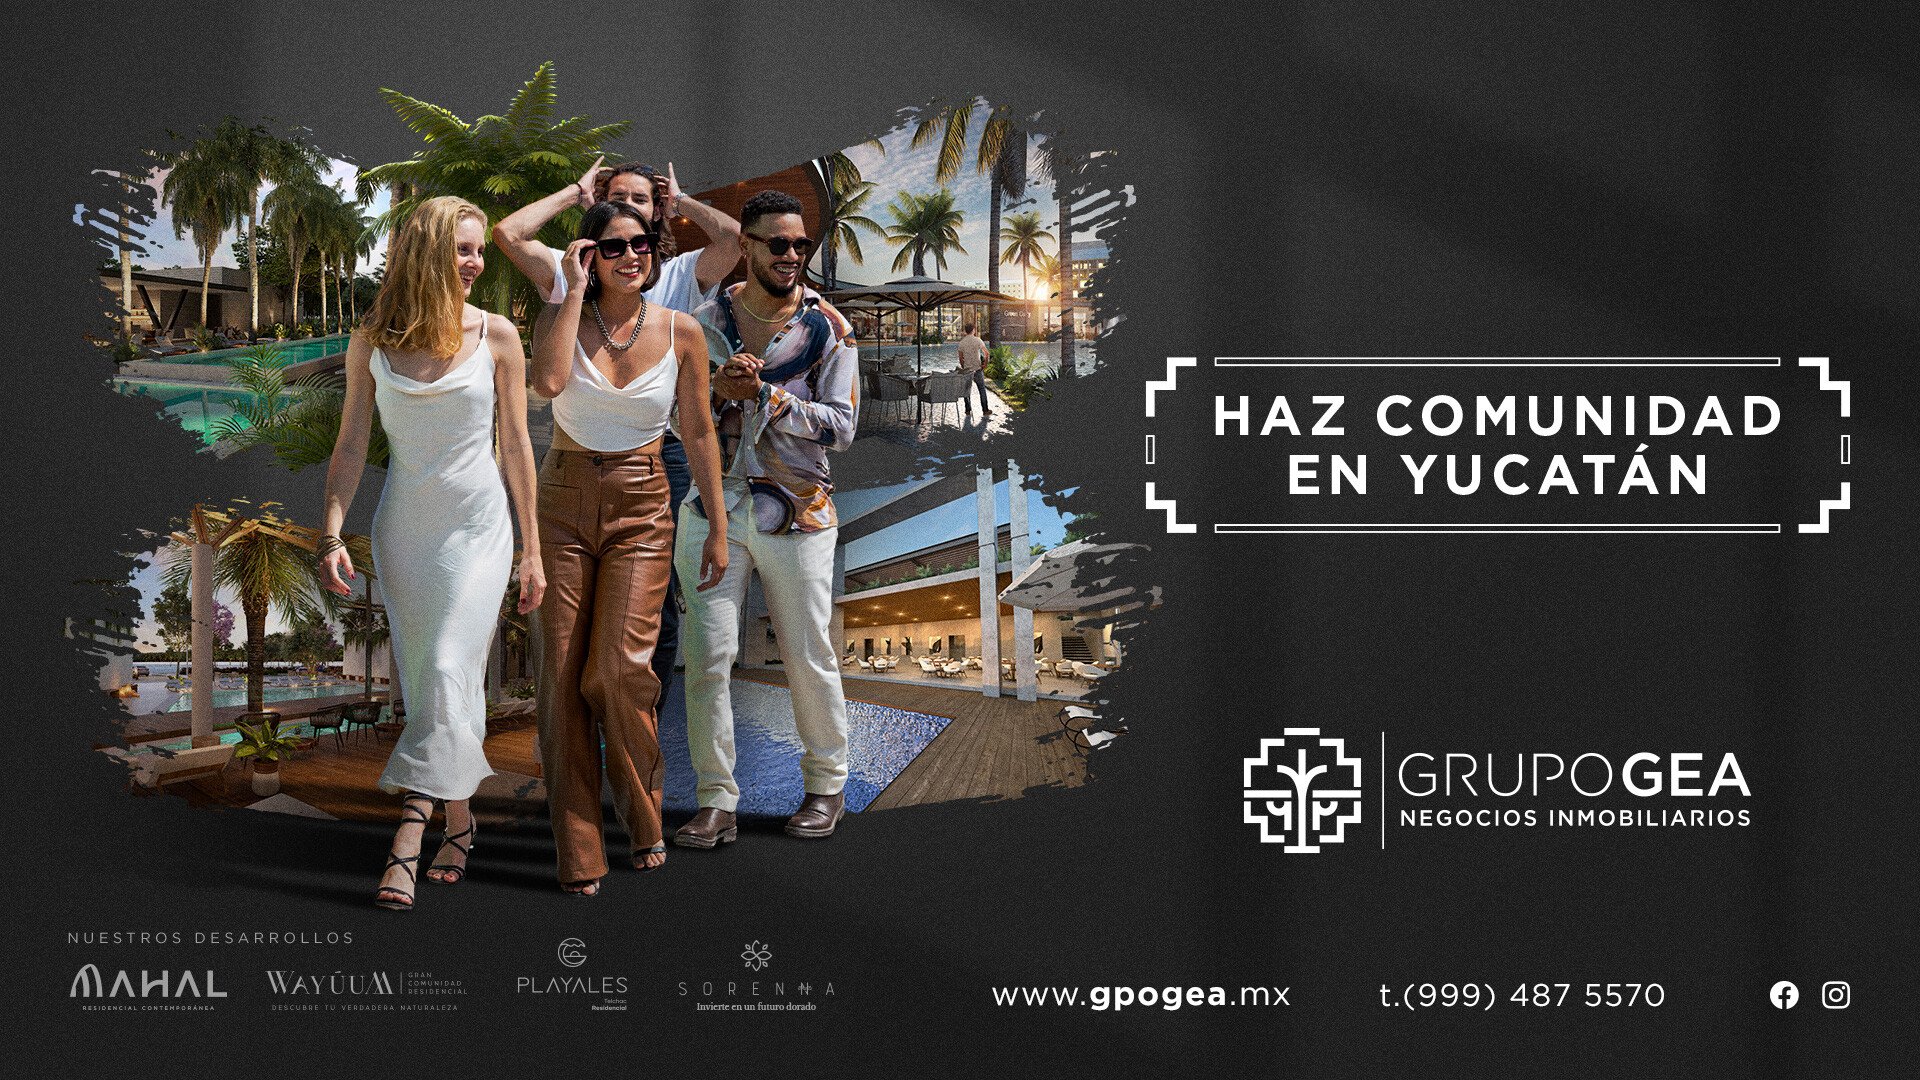 Campaña Creativa: “Haz comunidad en Yucatán” (Grupo GEA)